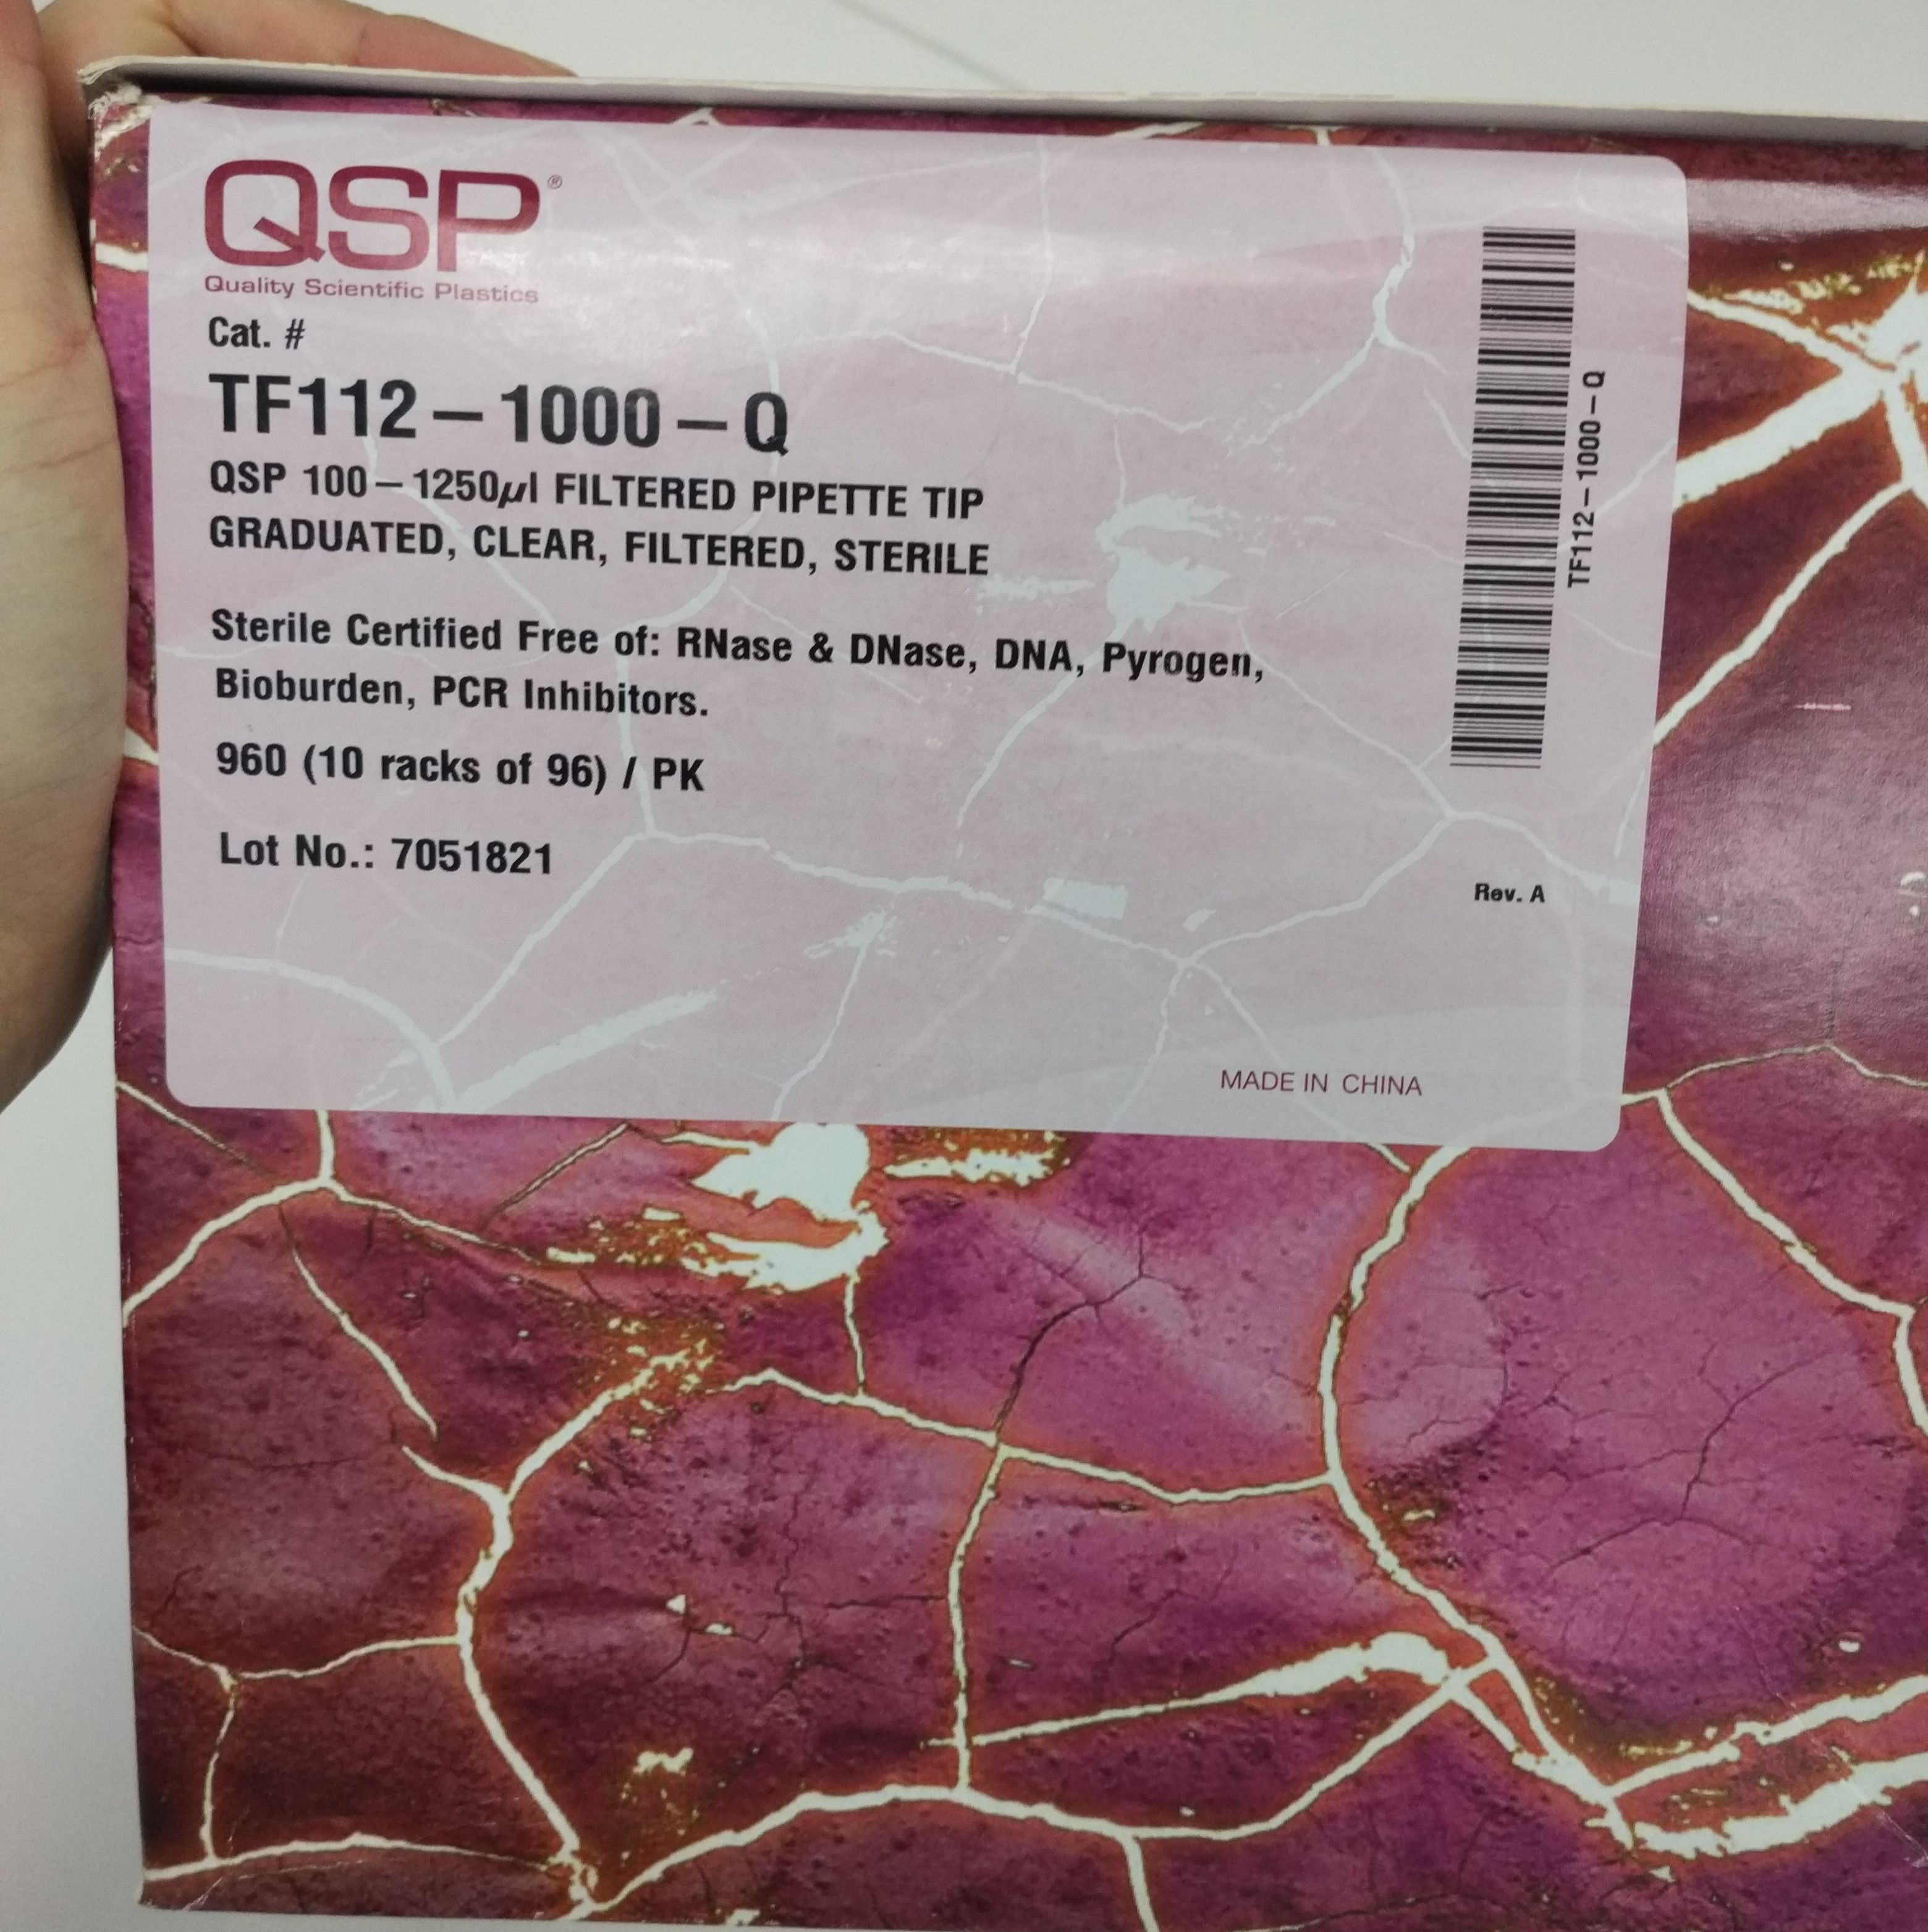 爆款QSP货号TF112-1000-Q畅销供应13611631389上海睿安生物